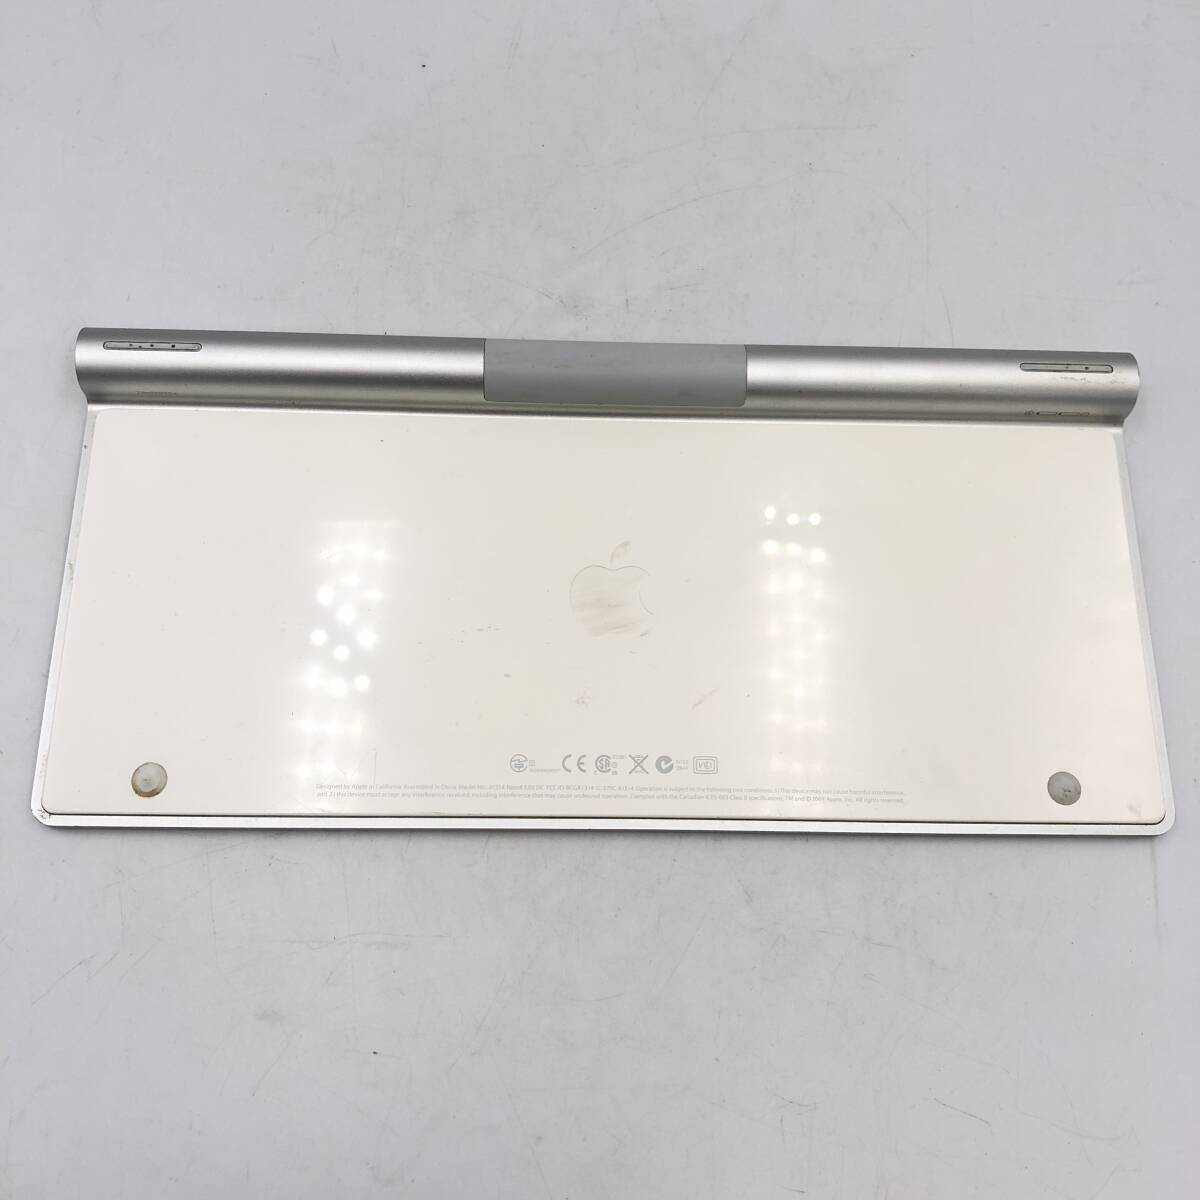 【Apple】Mac キーボード A1314 マジックキーボード ワイヤレスキーボード ジャンク ホワイト 白色 日本語_画像2